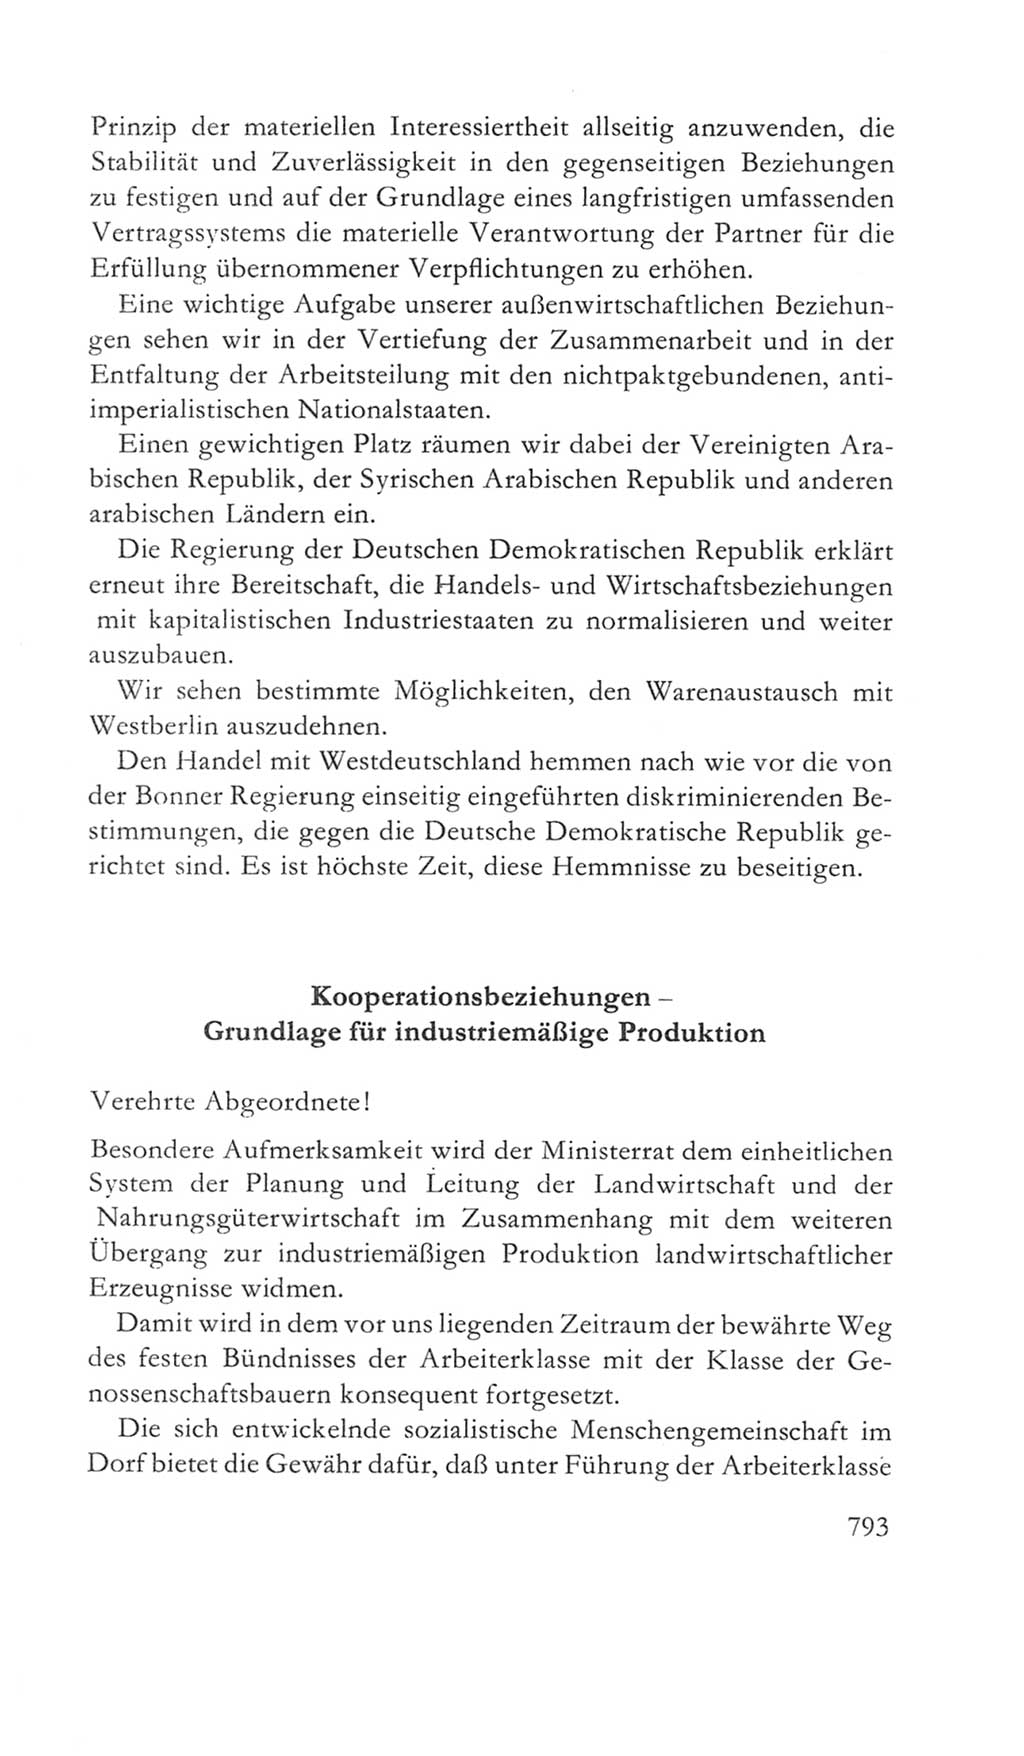 Volkskammer (VK) der Deutschen Demokratischen Republik (DDR) 5. Wahlperiode 1967-1971, Seite 793 (VK. DDR 5. WP. 1967-1971, S. 793)